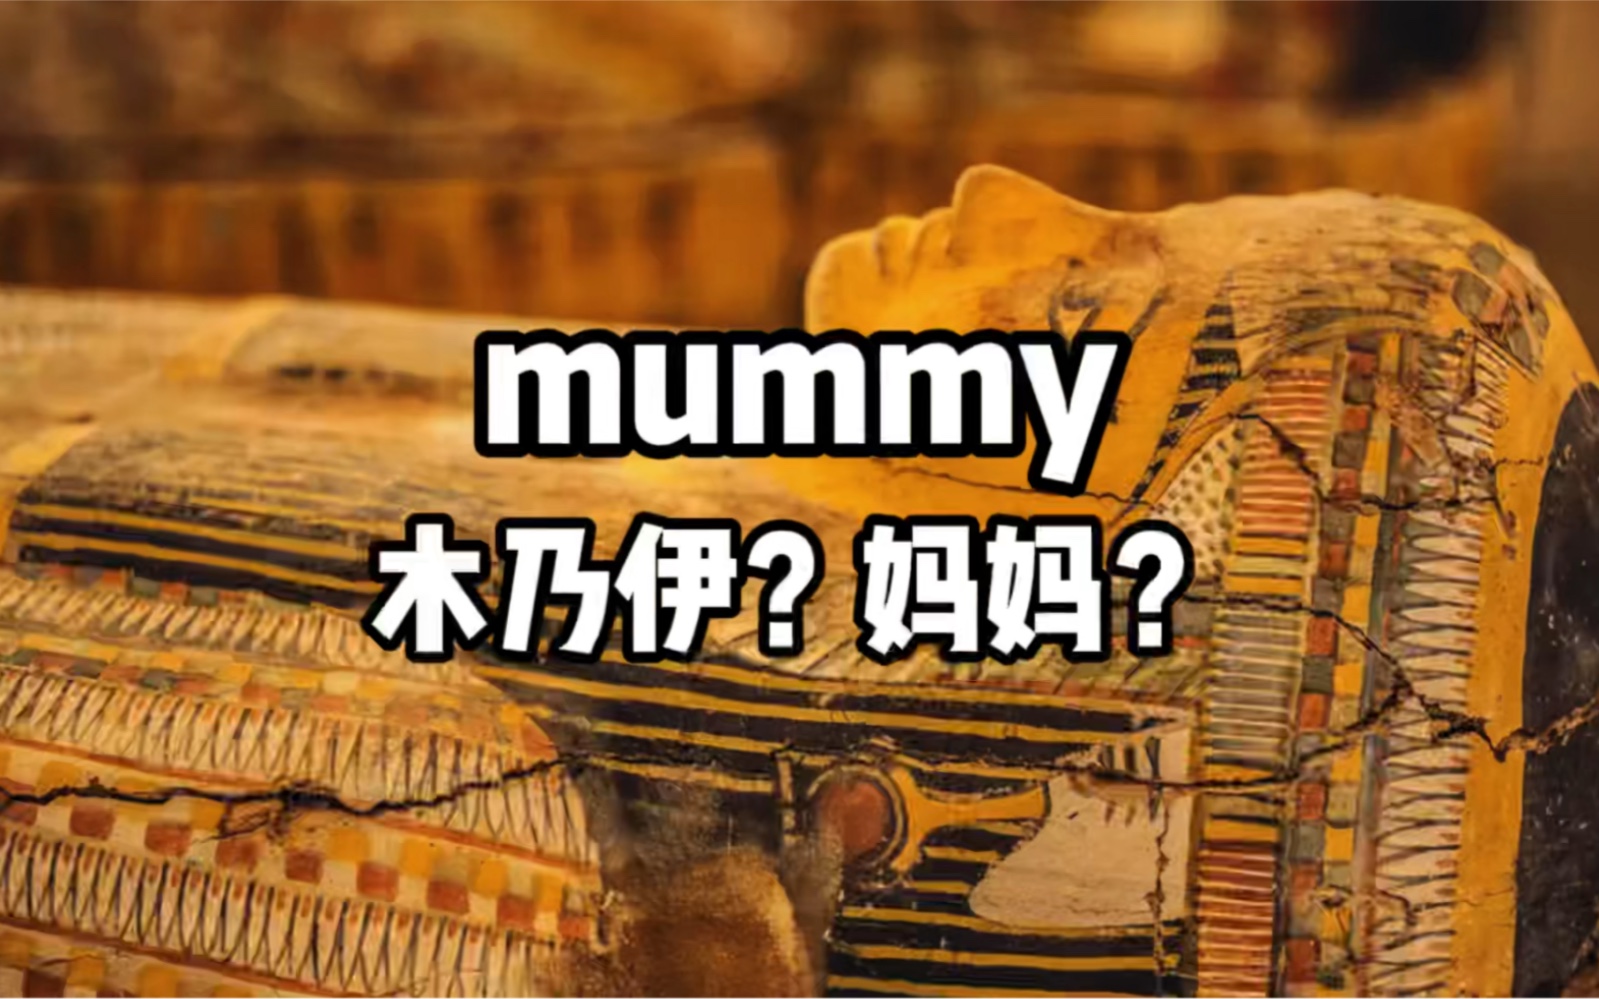 为何mummy既表示“妈妈”，又表示“木乃伊”？